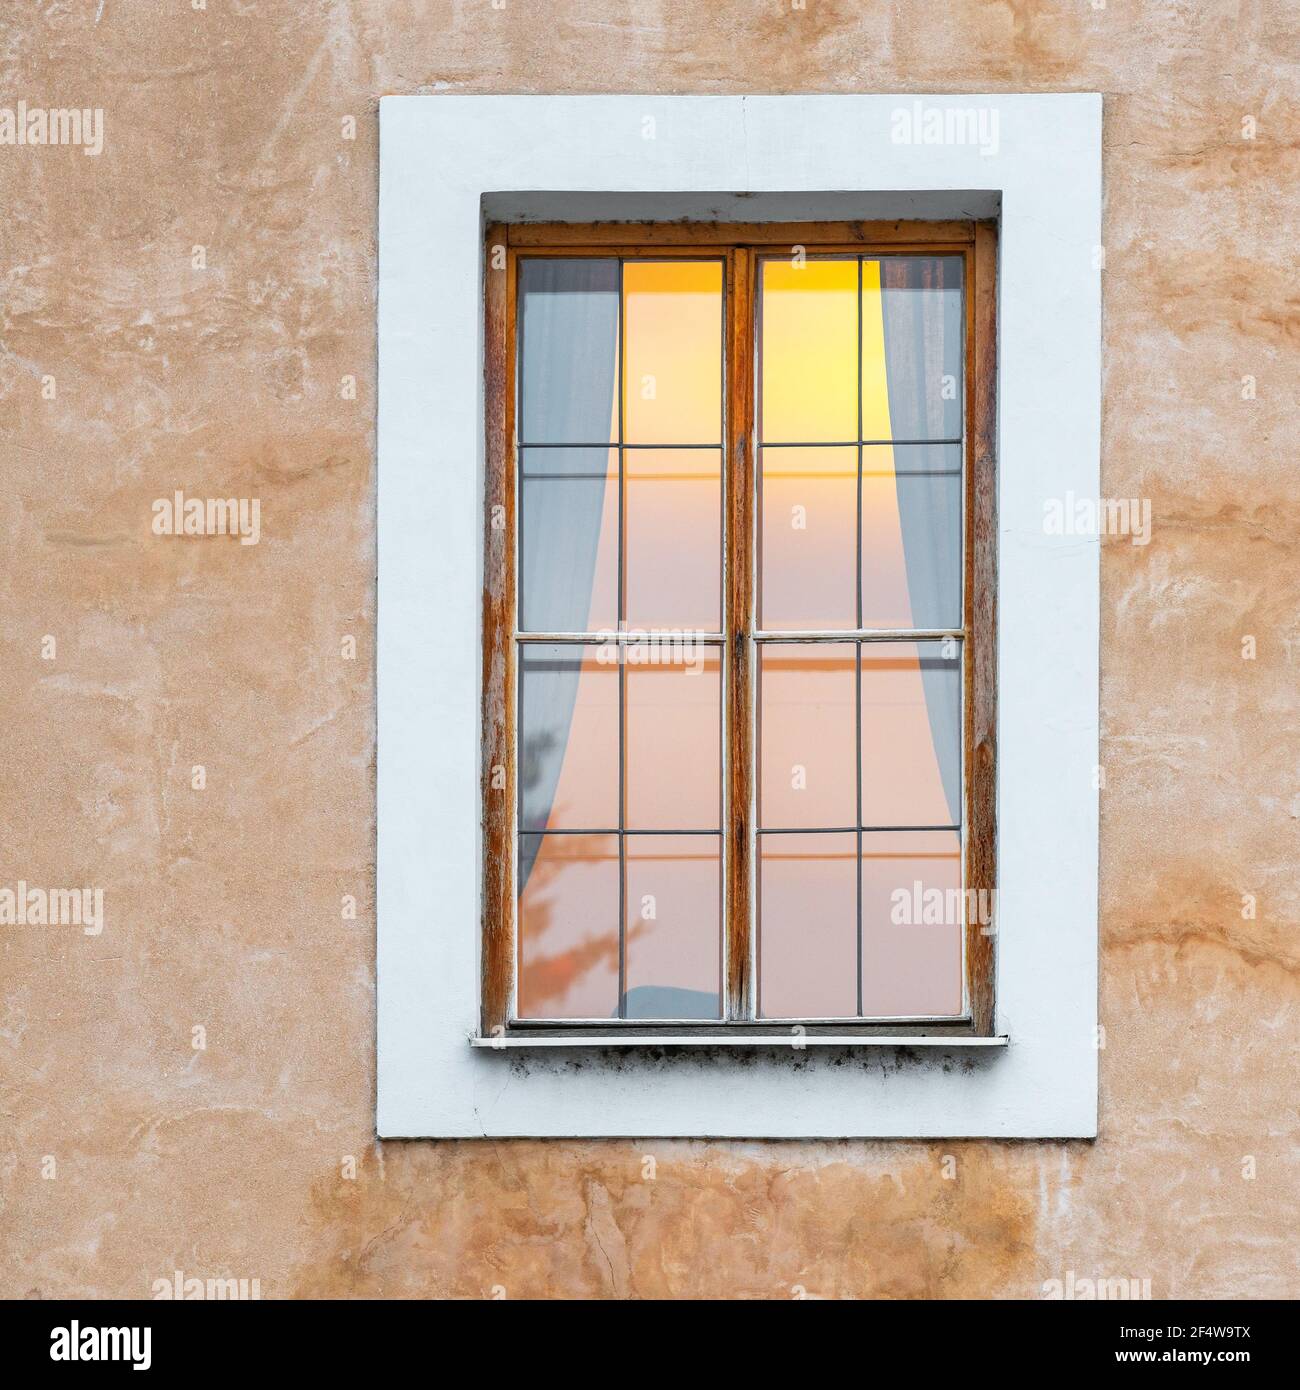 Façade d'architecture de style roman avec fenêtre et atmosphère lumineuse, Prague, République Tchèque. Banque D'Images